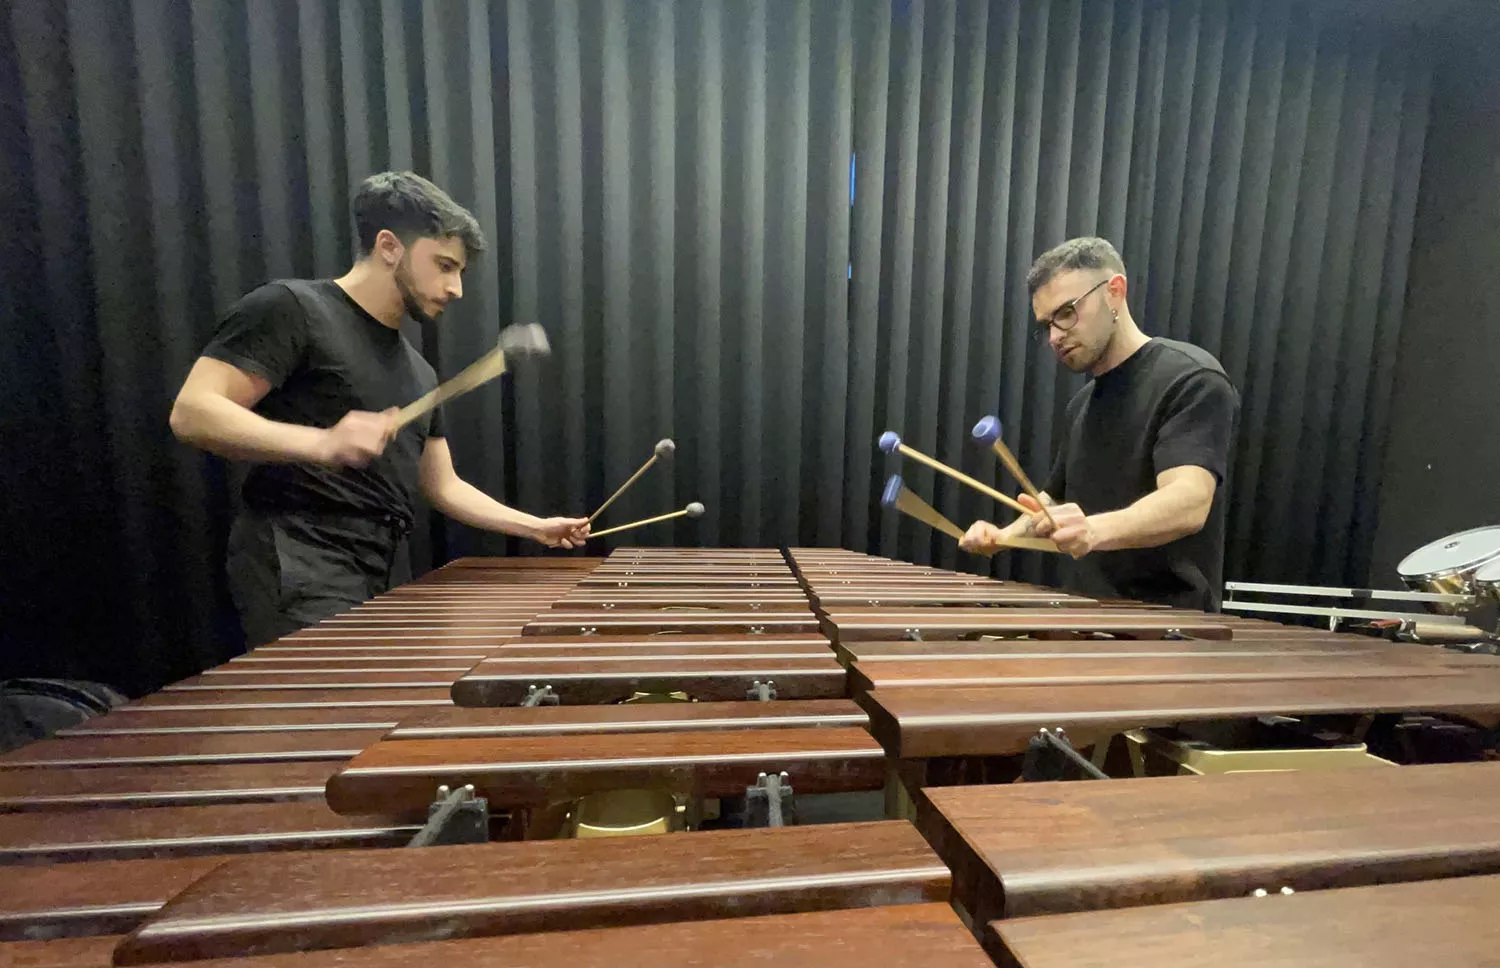 El dúo Stèles ofrece un concierto de percusión cargado de energía en el Auditorio del Conservatorio